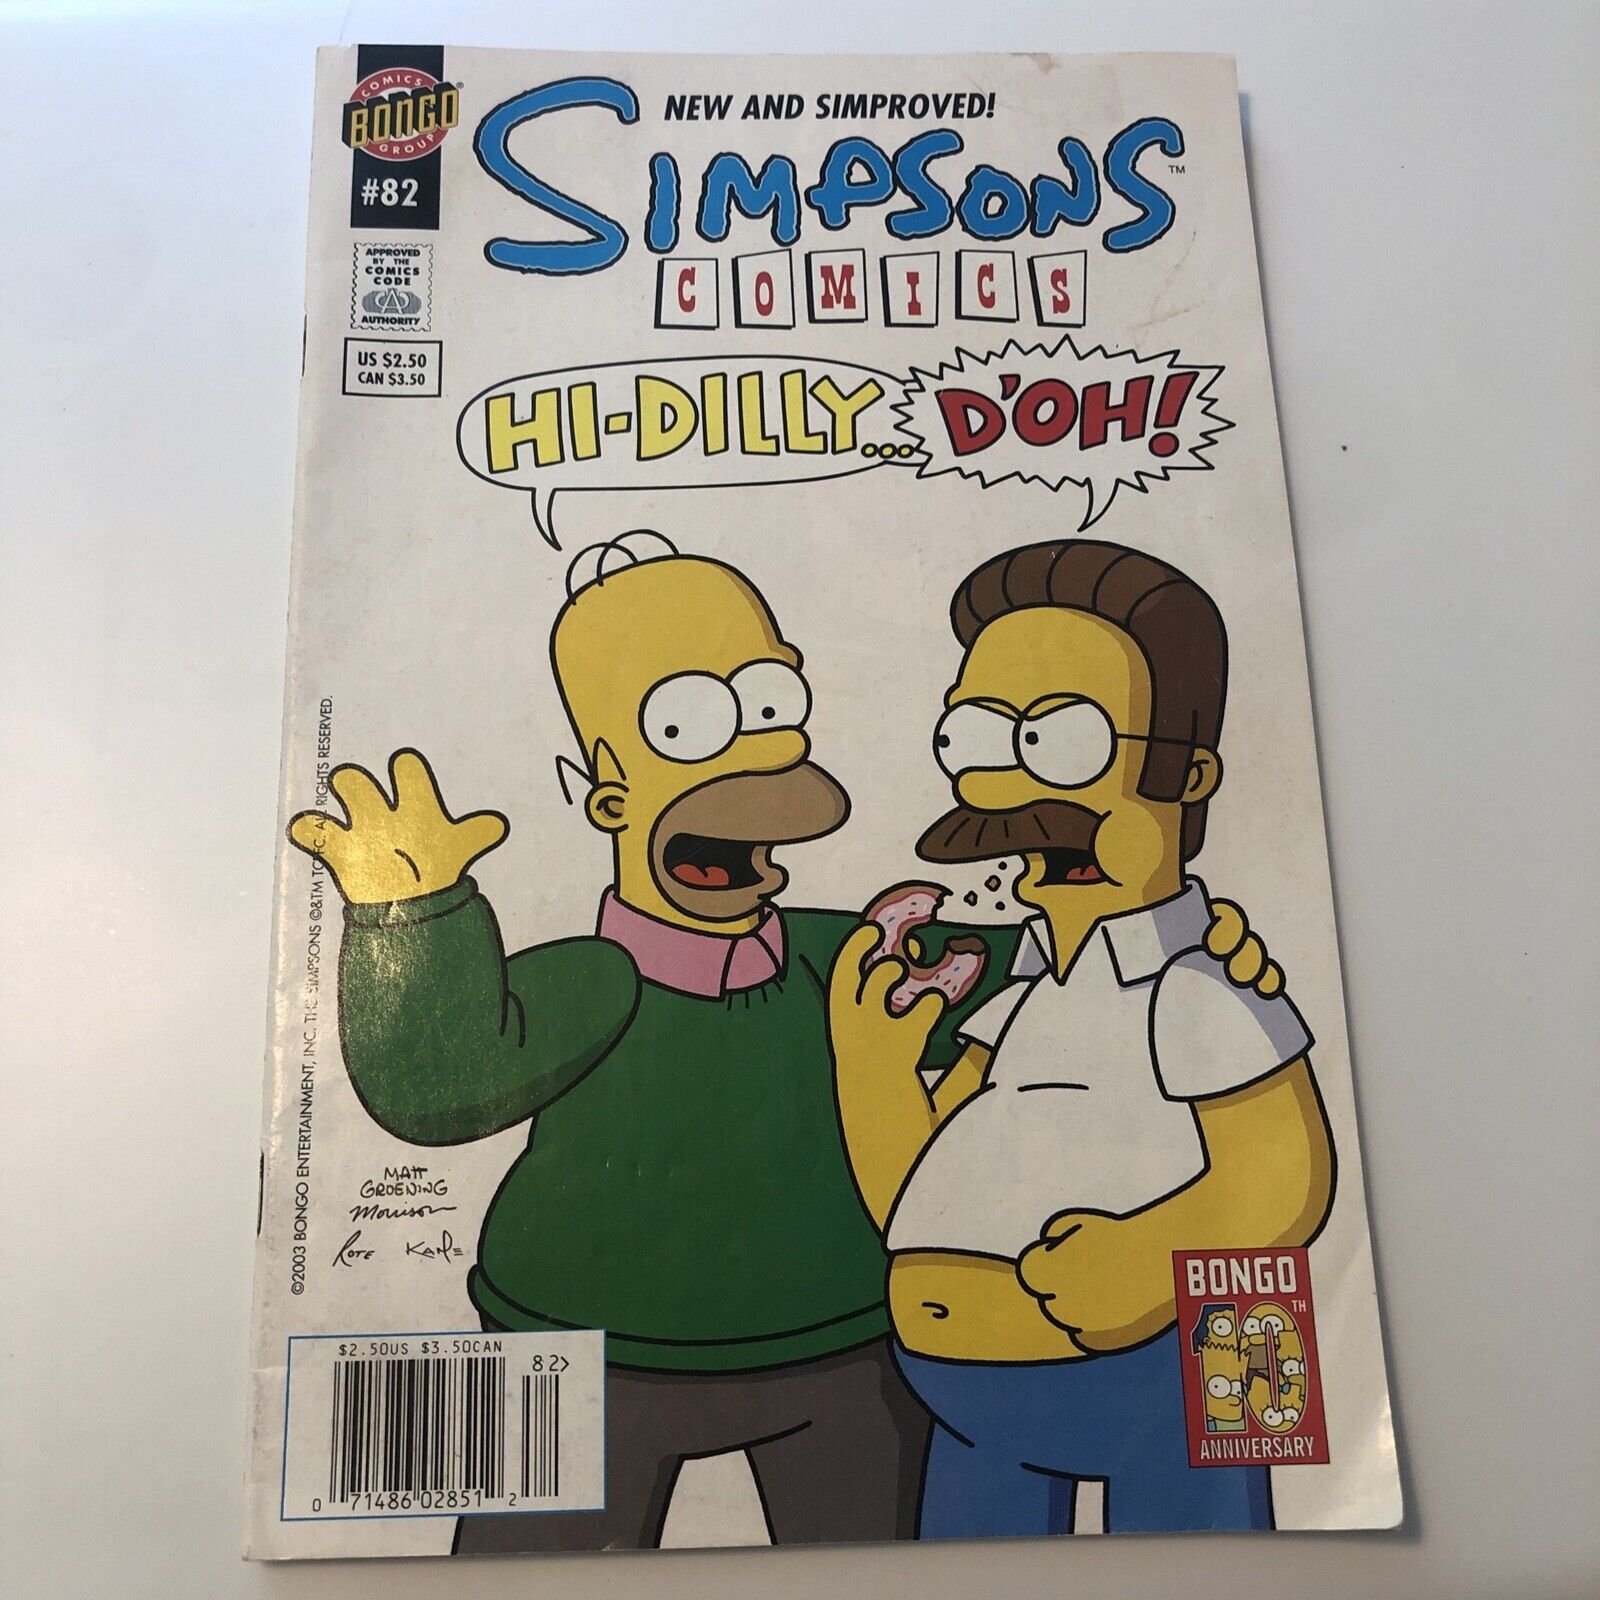 Simpsons Comics Hi-dilly…doh #82